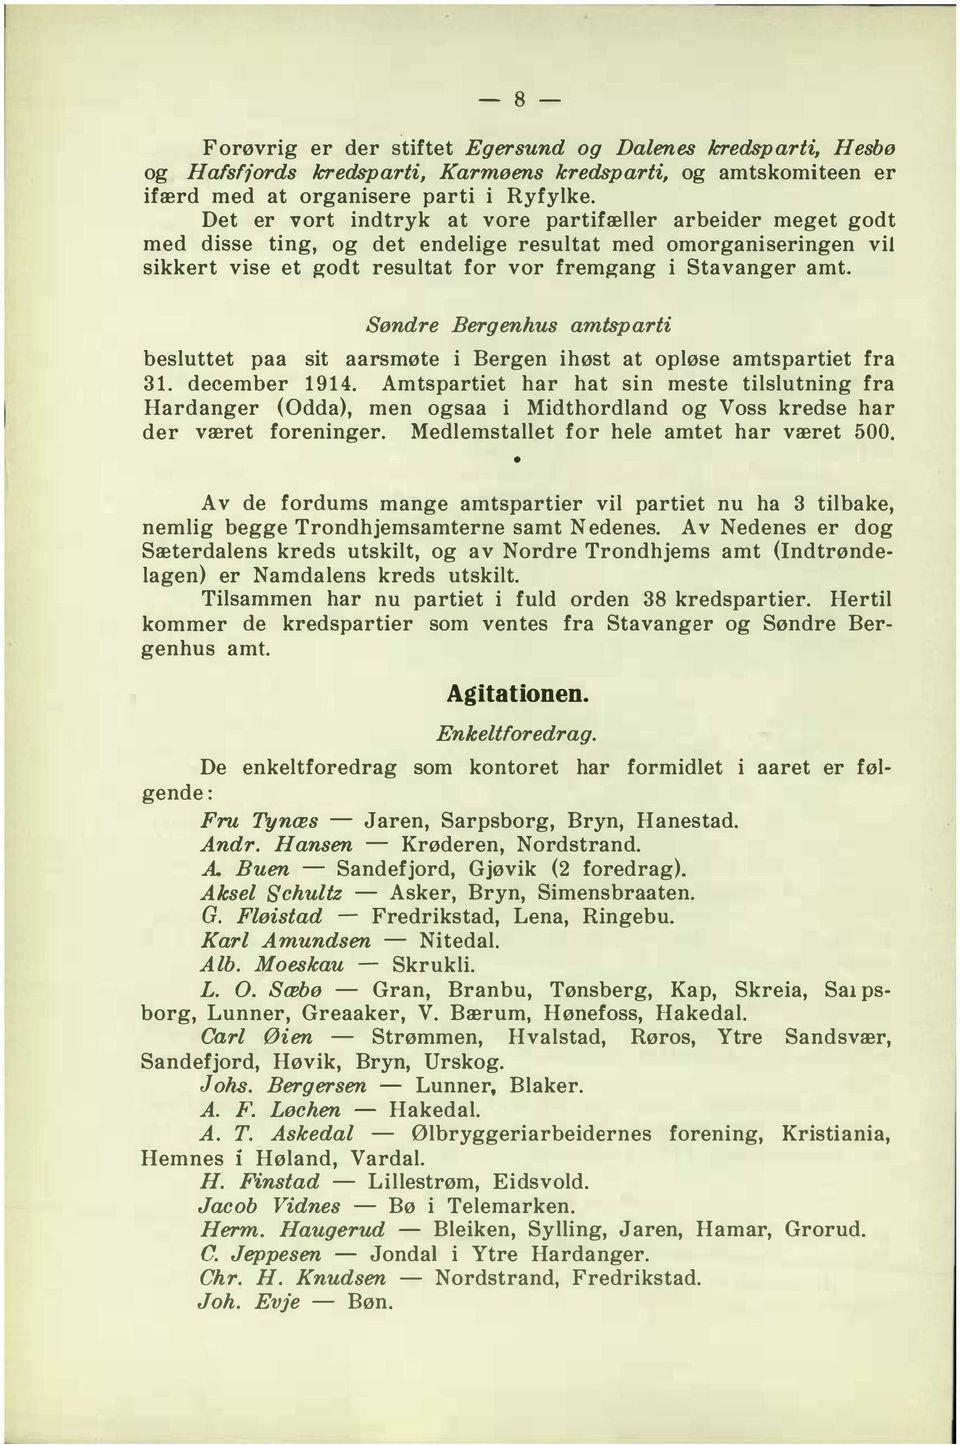 Søndre Bergenhus amtsparti besluttet paa sit aarsmøte i Bergen ihøst at opløse amtspartiet fra 31. december 1914.